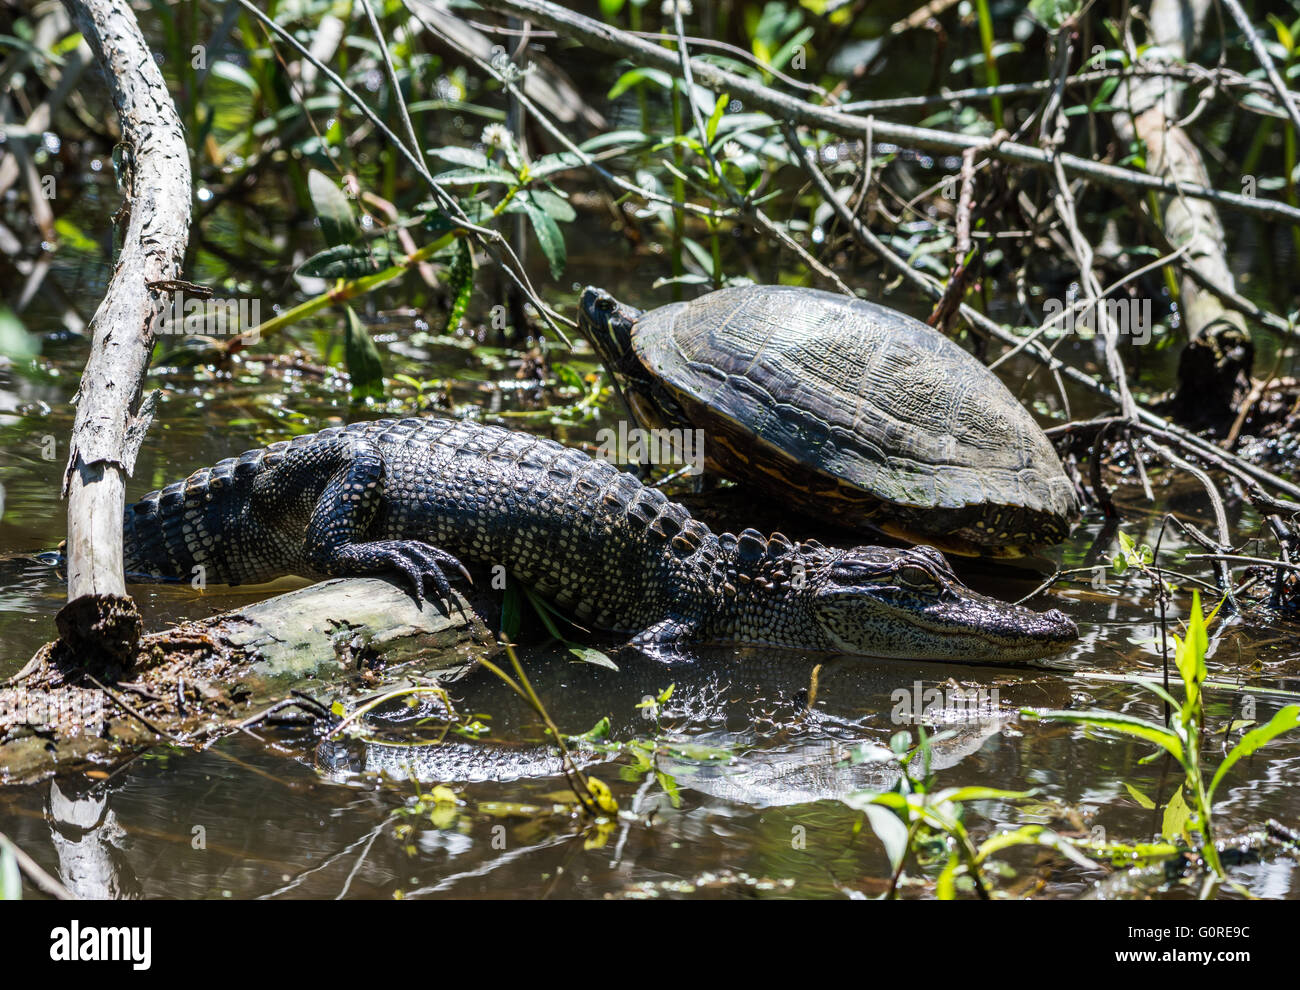 Ein paar Reptilien Freunde, eine Schildkröte und ein Alligator, Sonnenbaden neben einander. High Island, Texas, USA. Stockfoto